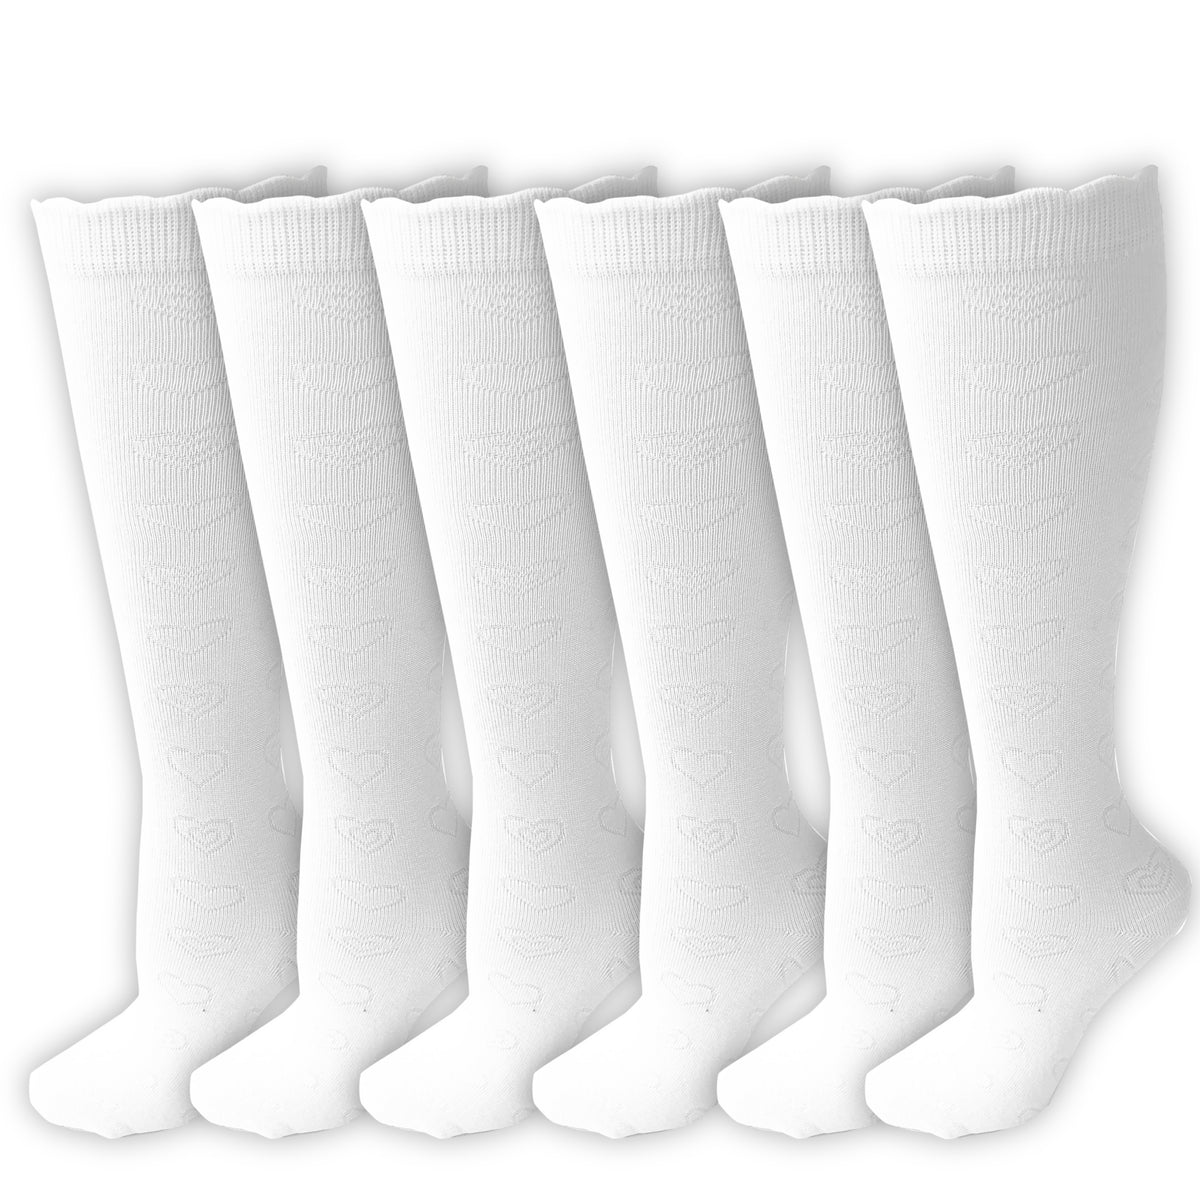 White Knee High Socks 6 Pack